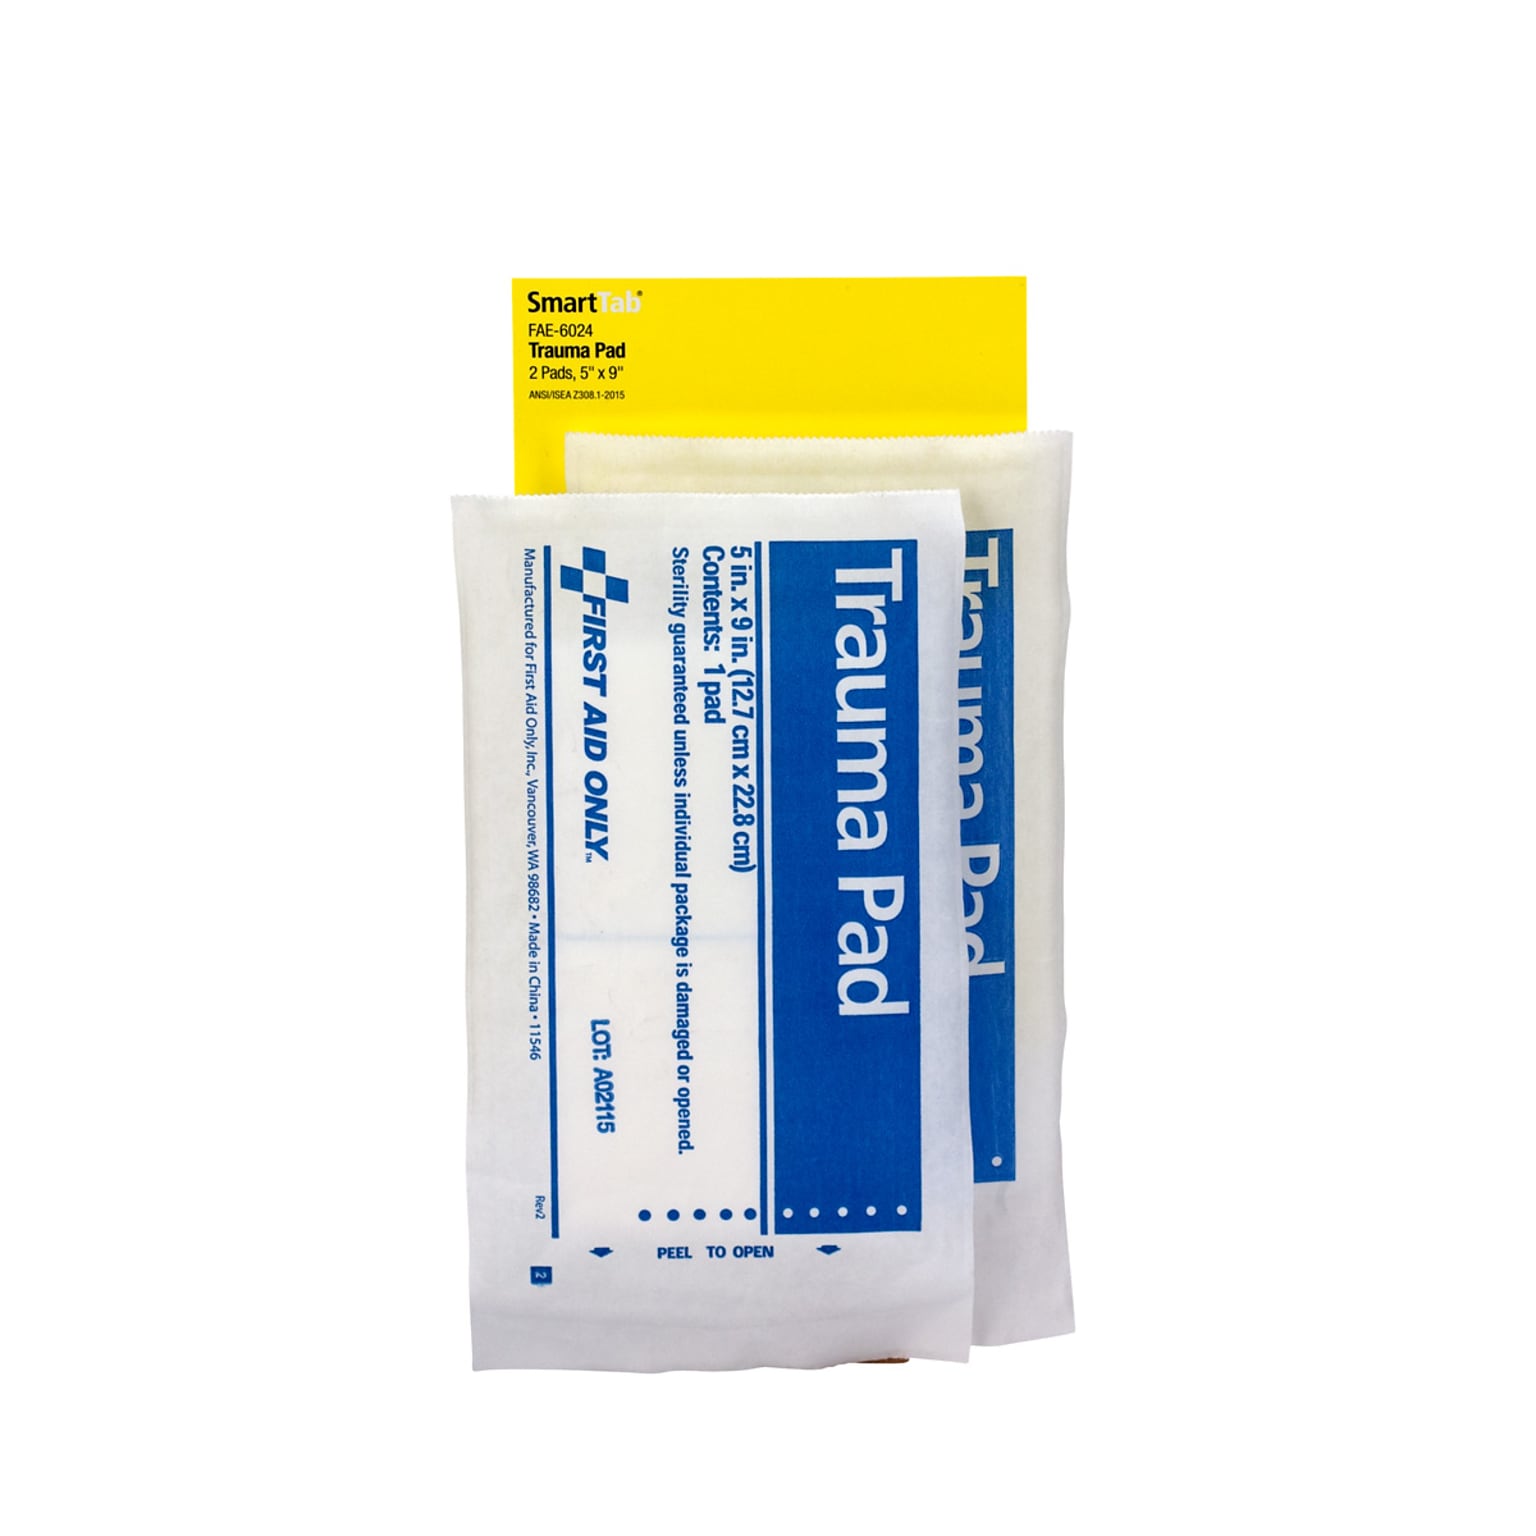 First Aid Only® Trauma Pad, 5 x 9 (FAE-6024)